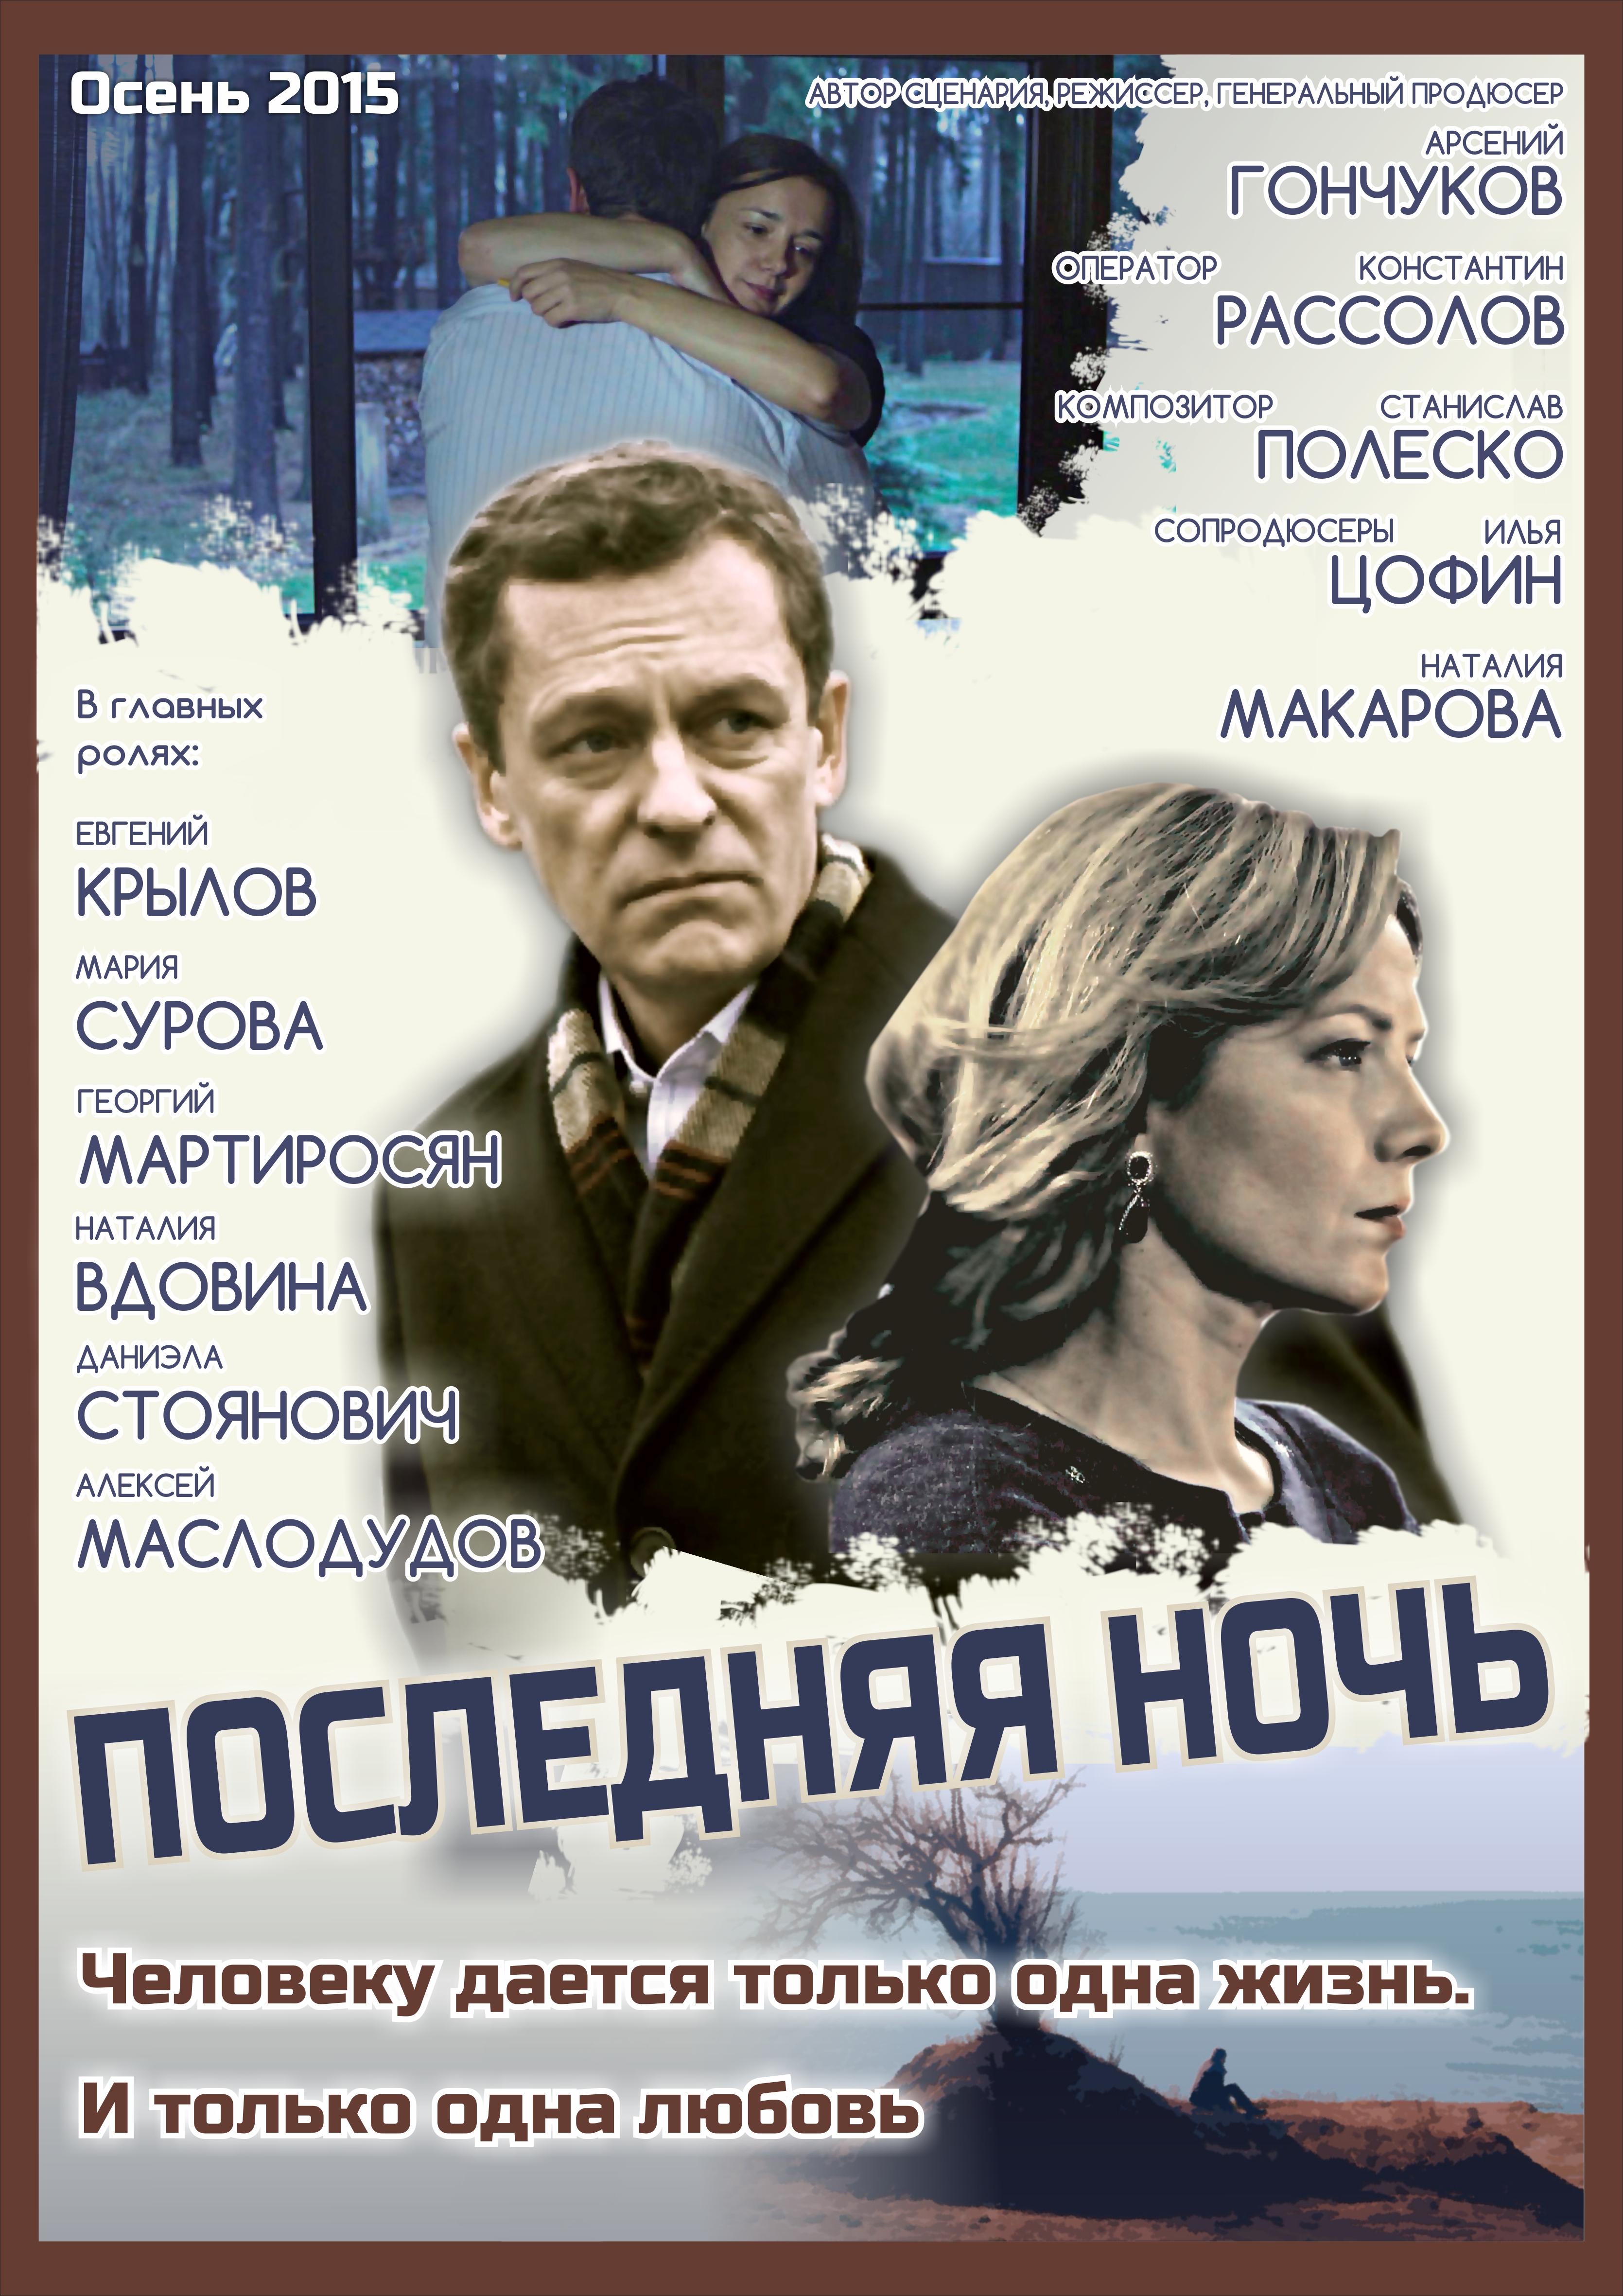 Současný ruský film  Arsenij Gončukov “Poslední noc”